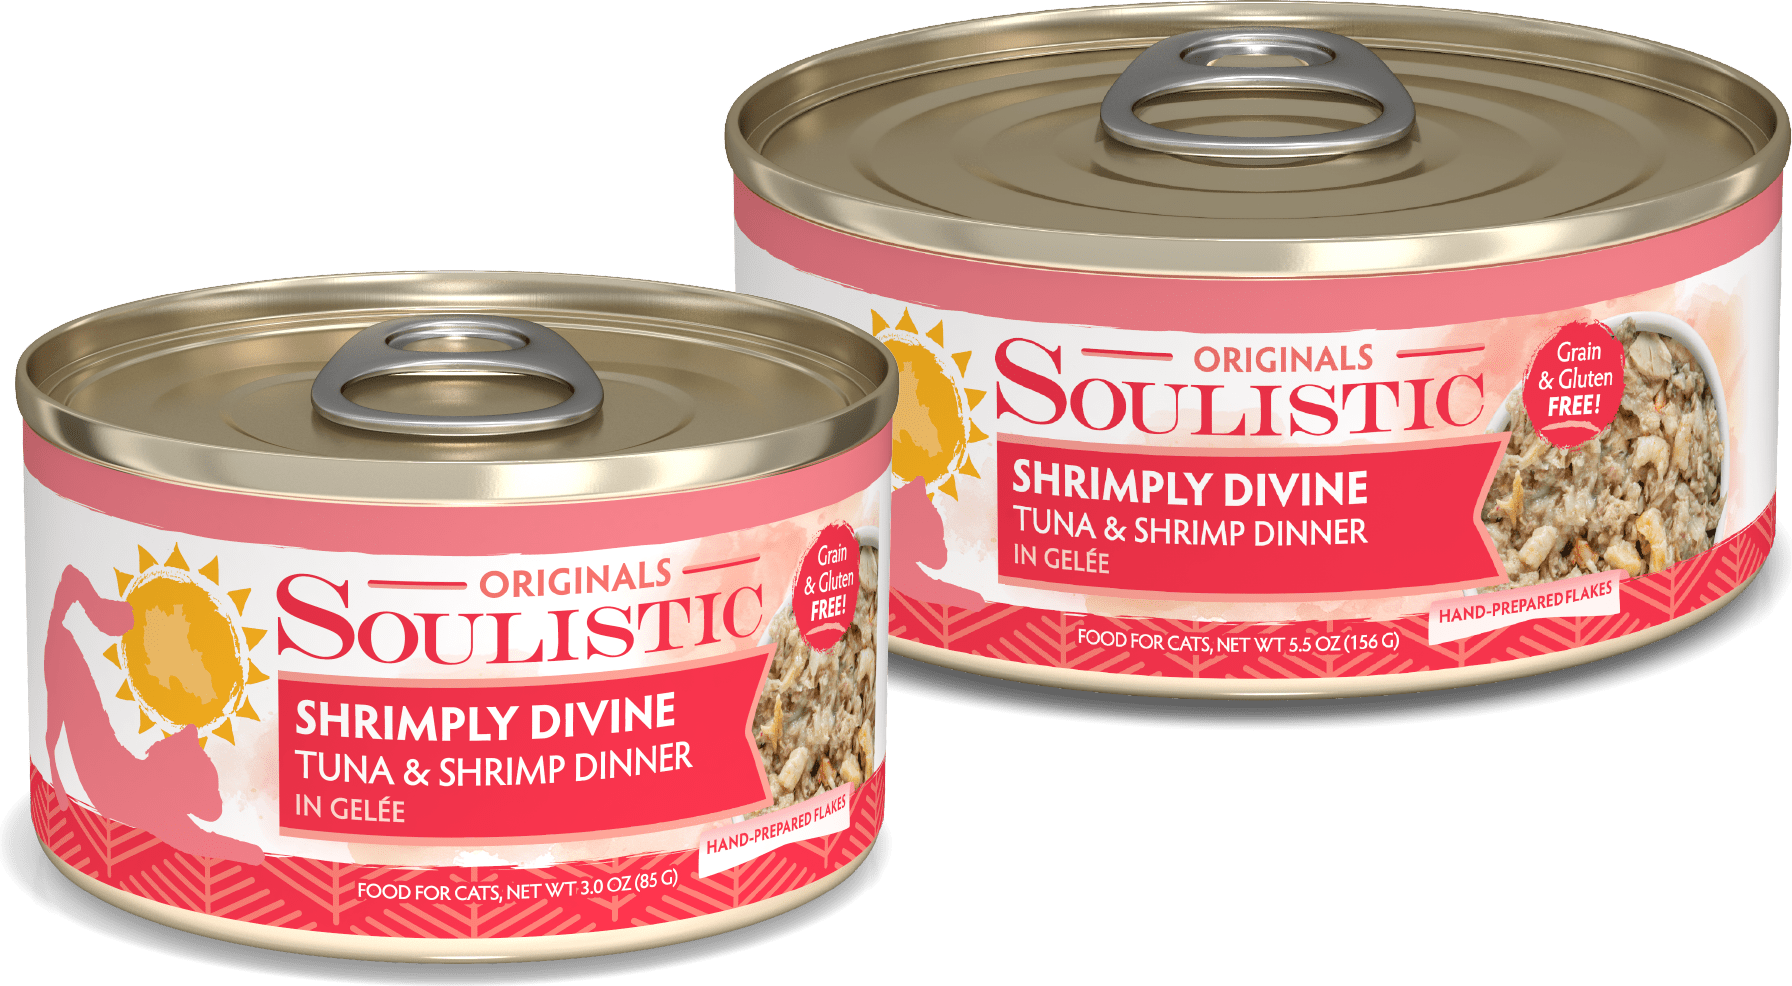 Soulistic Shrimply Divine